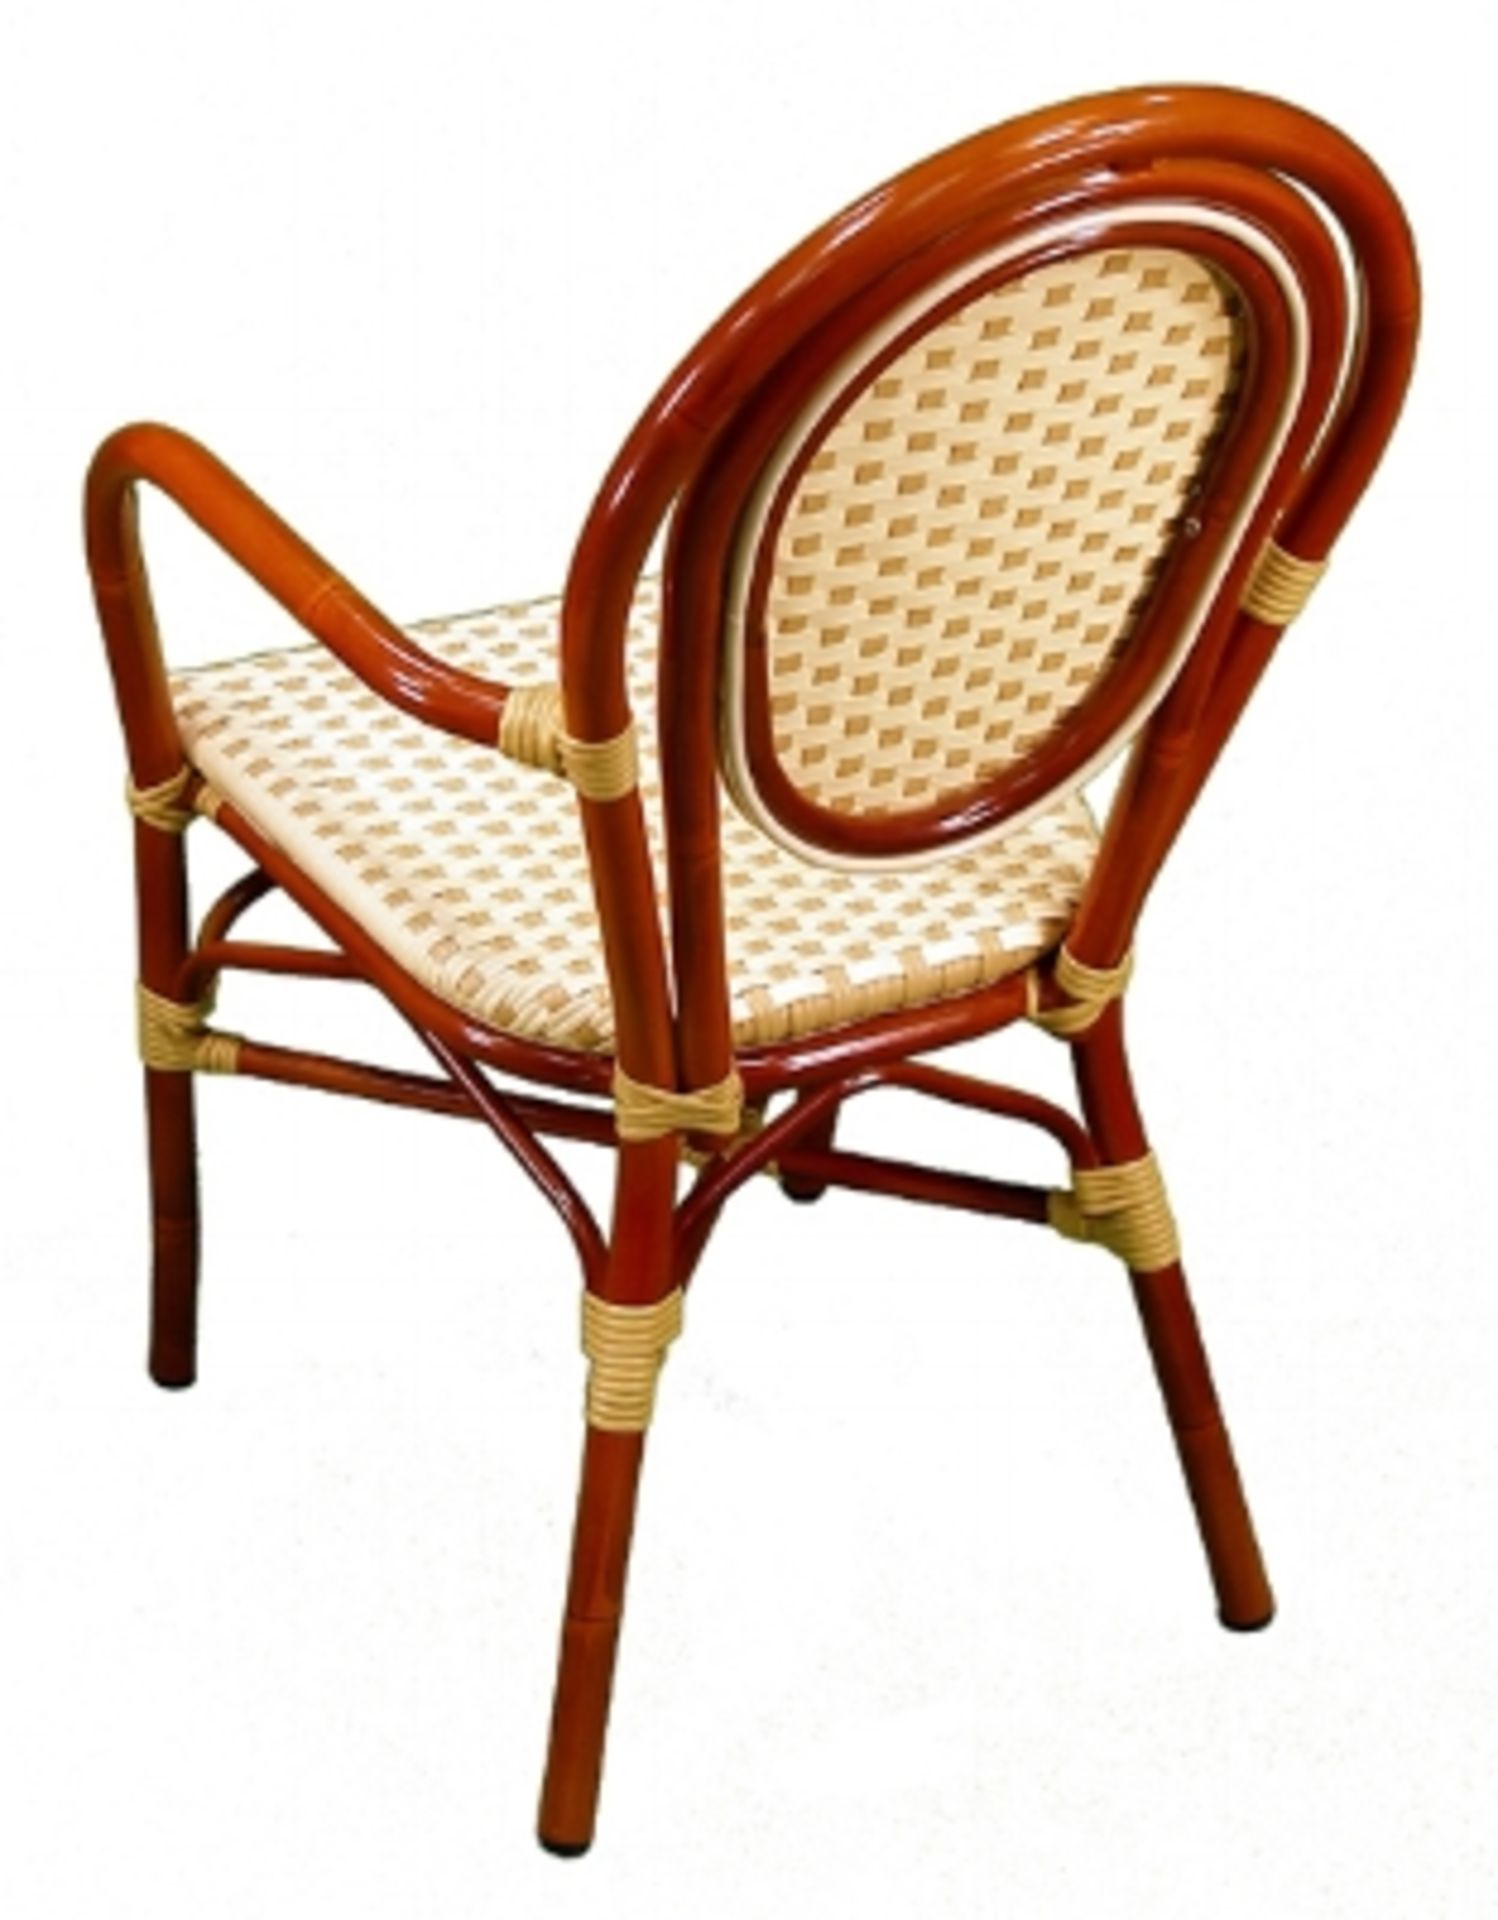 Parisienne Arm Chair - Ivory/Honey. PE Weave on Tubular Aluminum Frame/Powder coat finish - Image 2 of 6